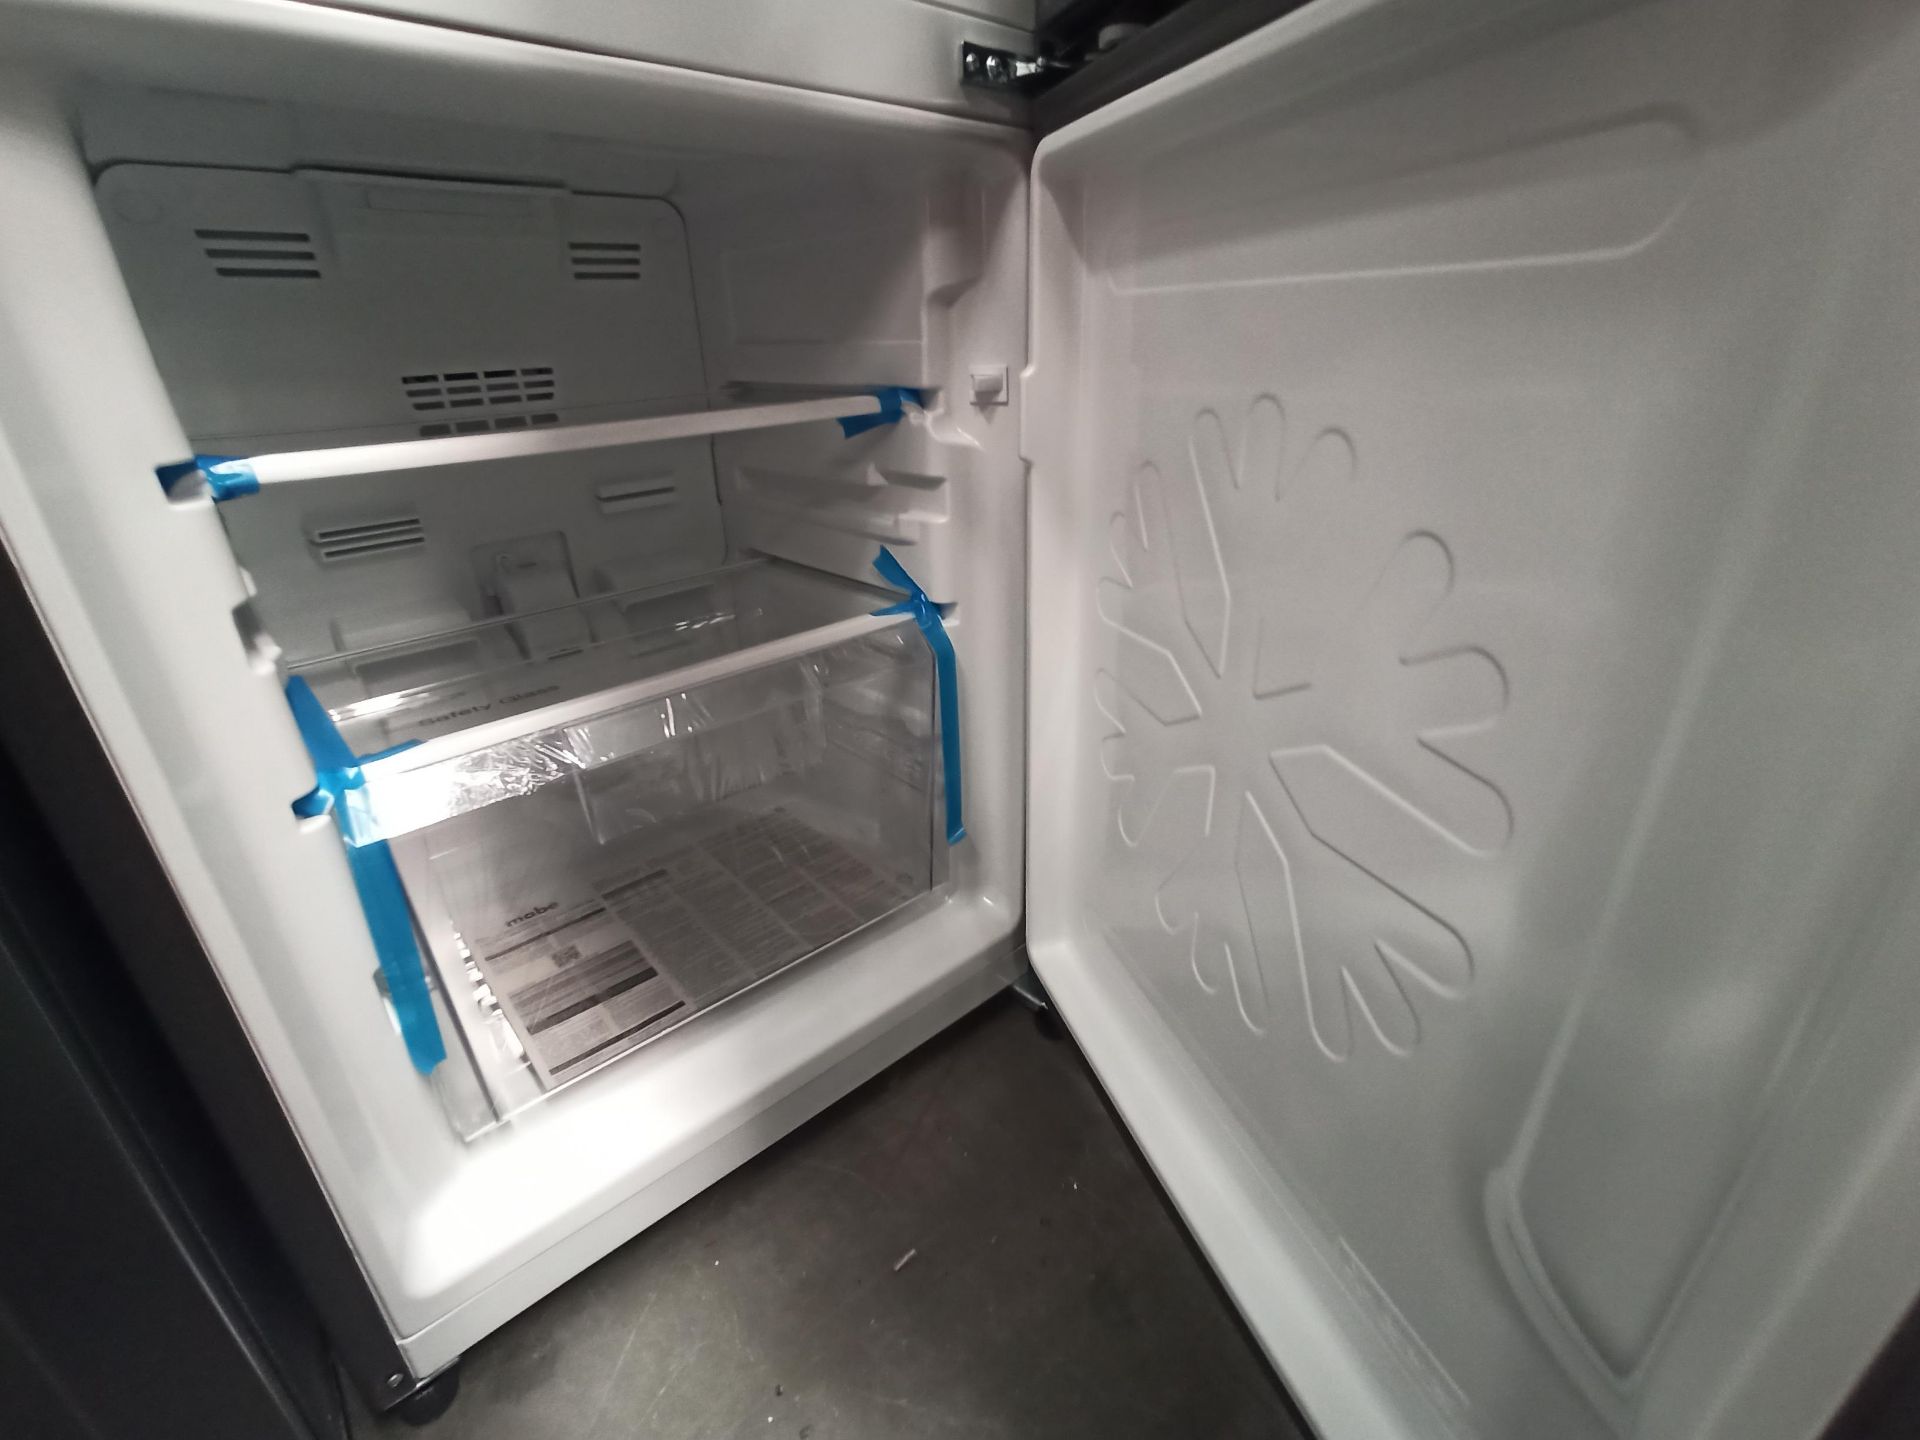 1 Refrigerador con dispensador de agua Marca MABE, Modelo RMB300IZMRXA, Serie 2210B408141, Color GR - Image 8 of 9